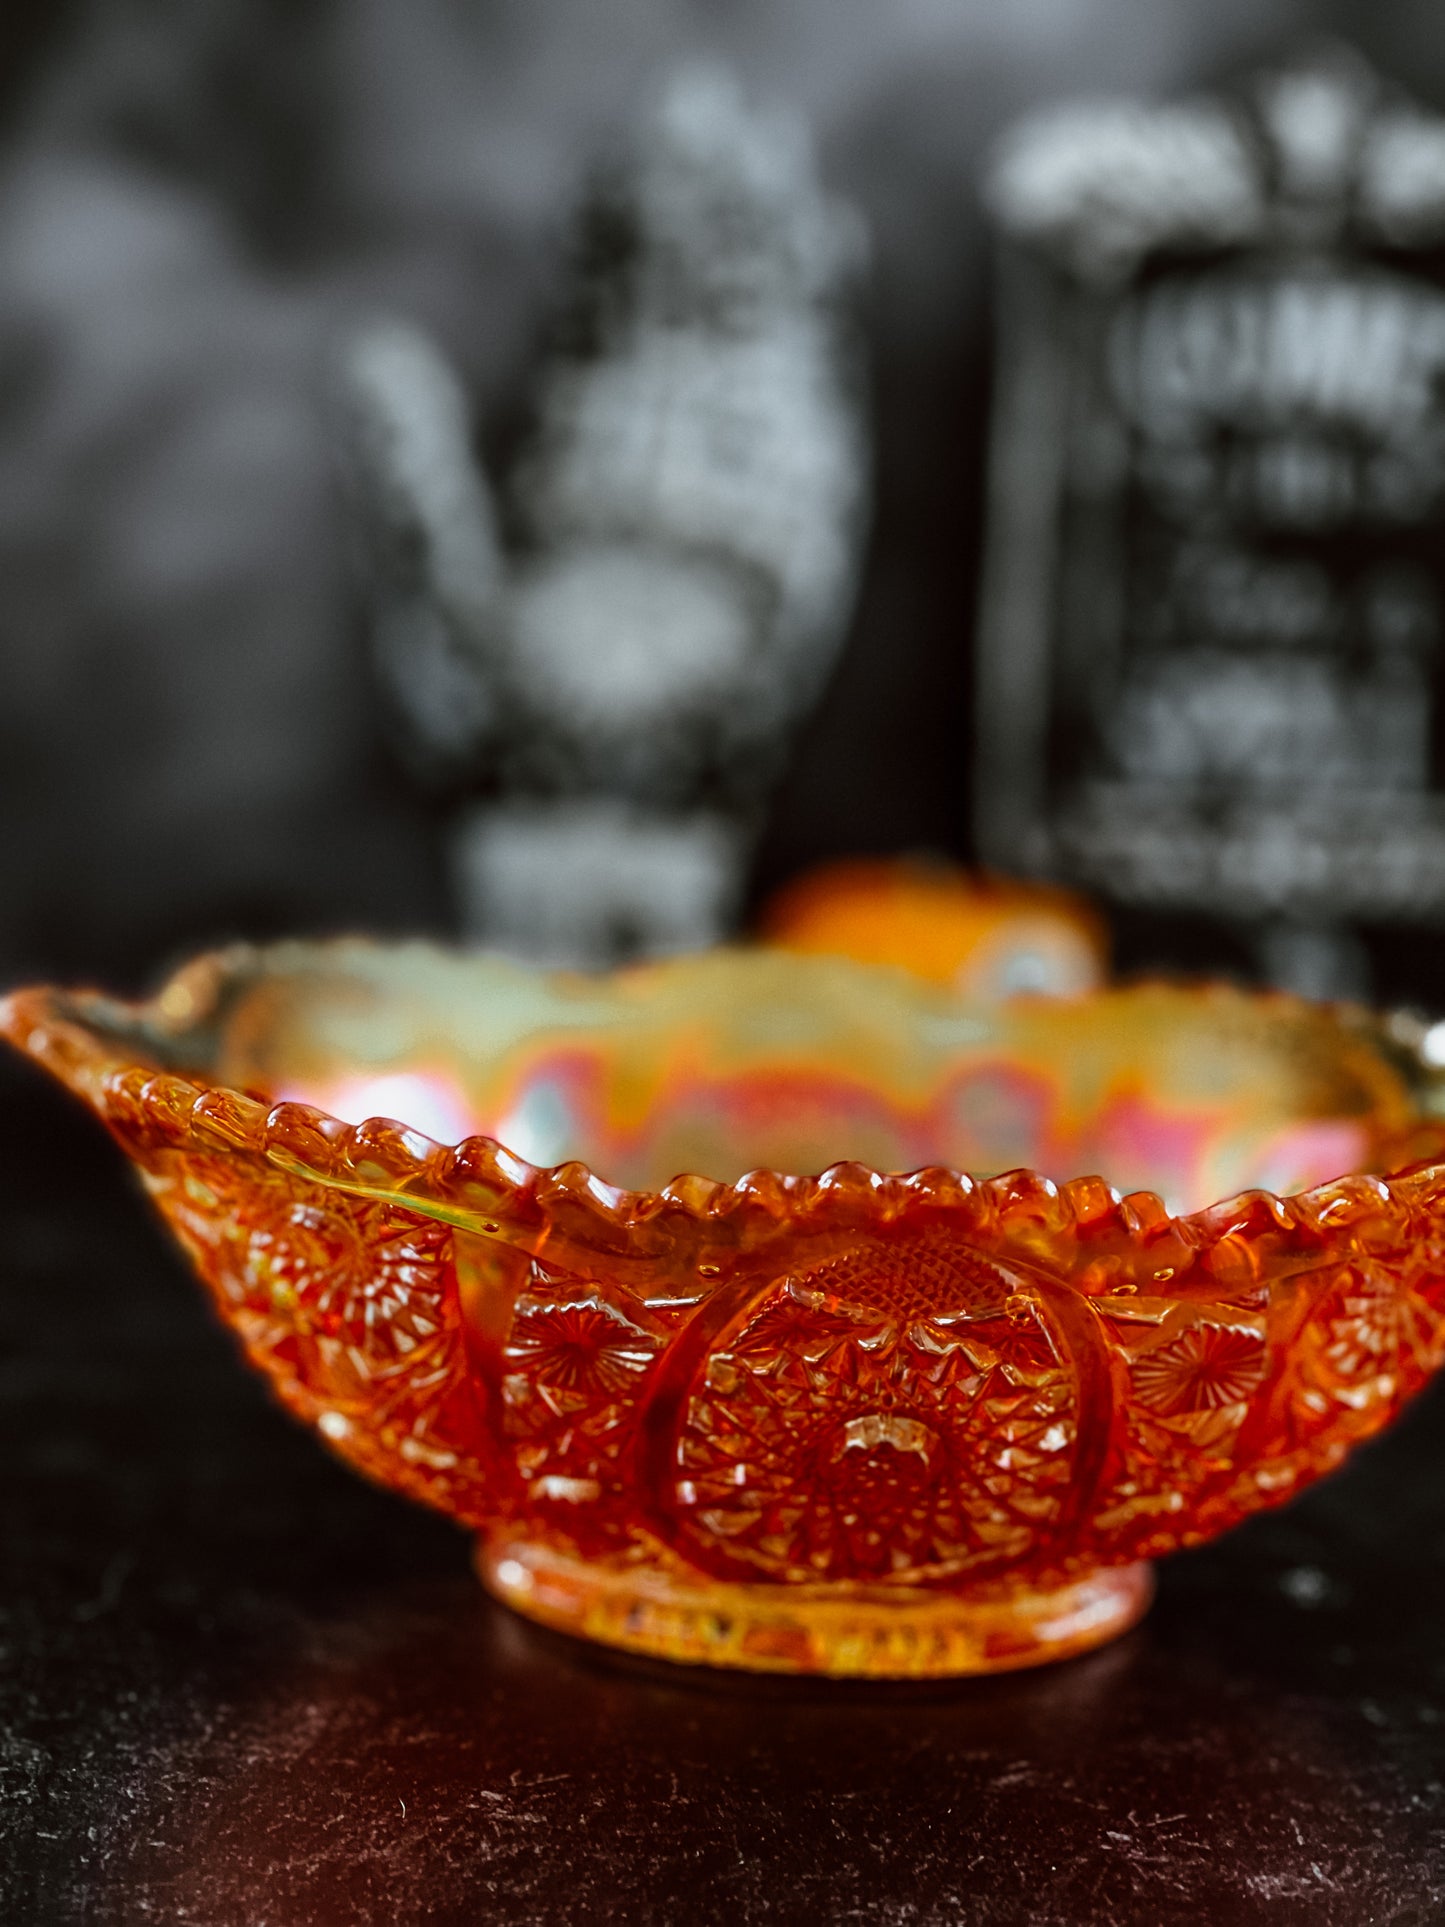 Sunburst Carnival Glass Bowl